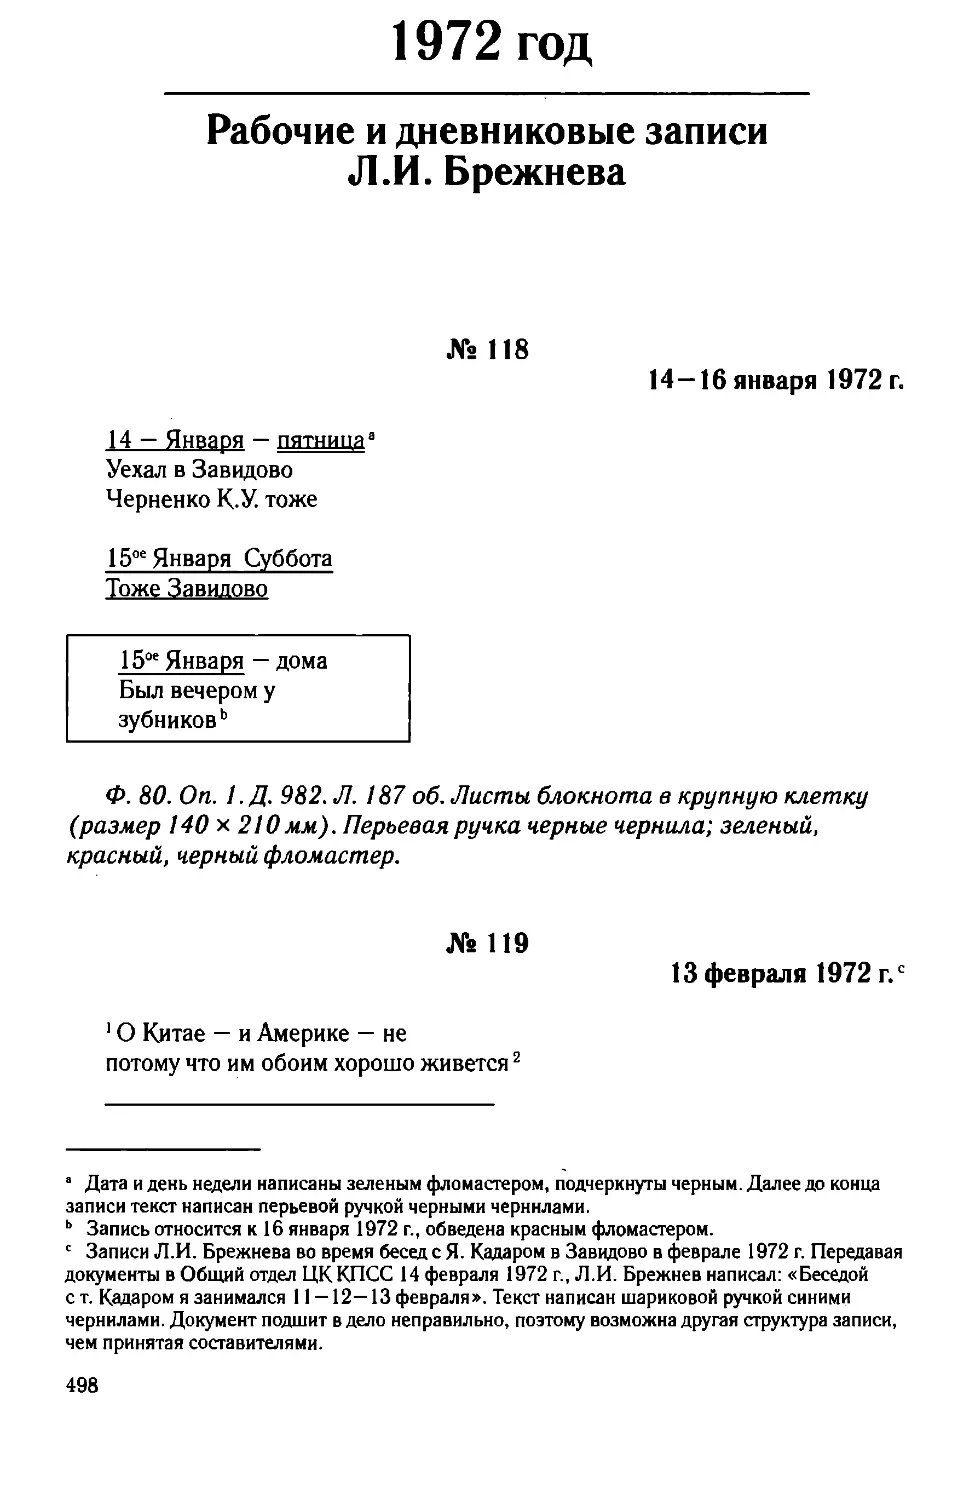 Рабочие и дневниковые записи Л.И. Брежнева. 1972 год